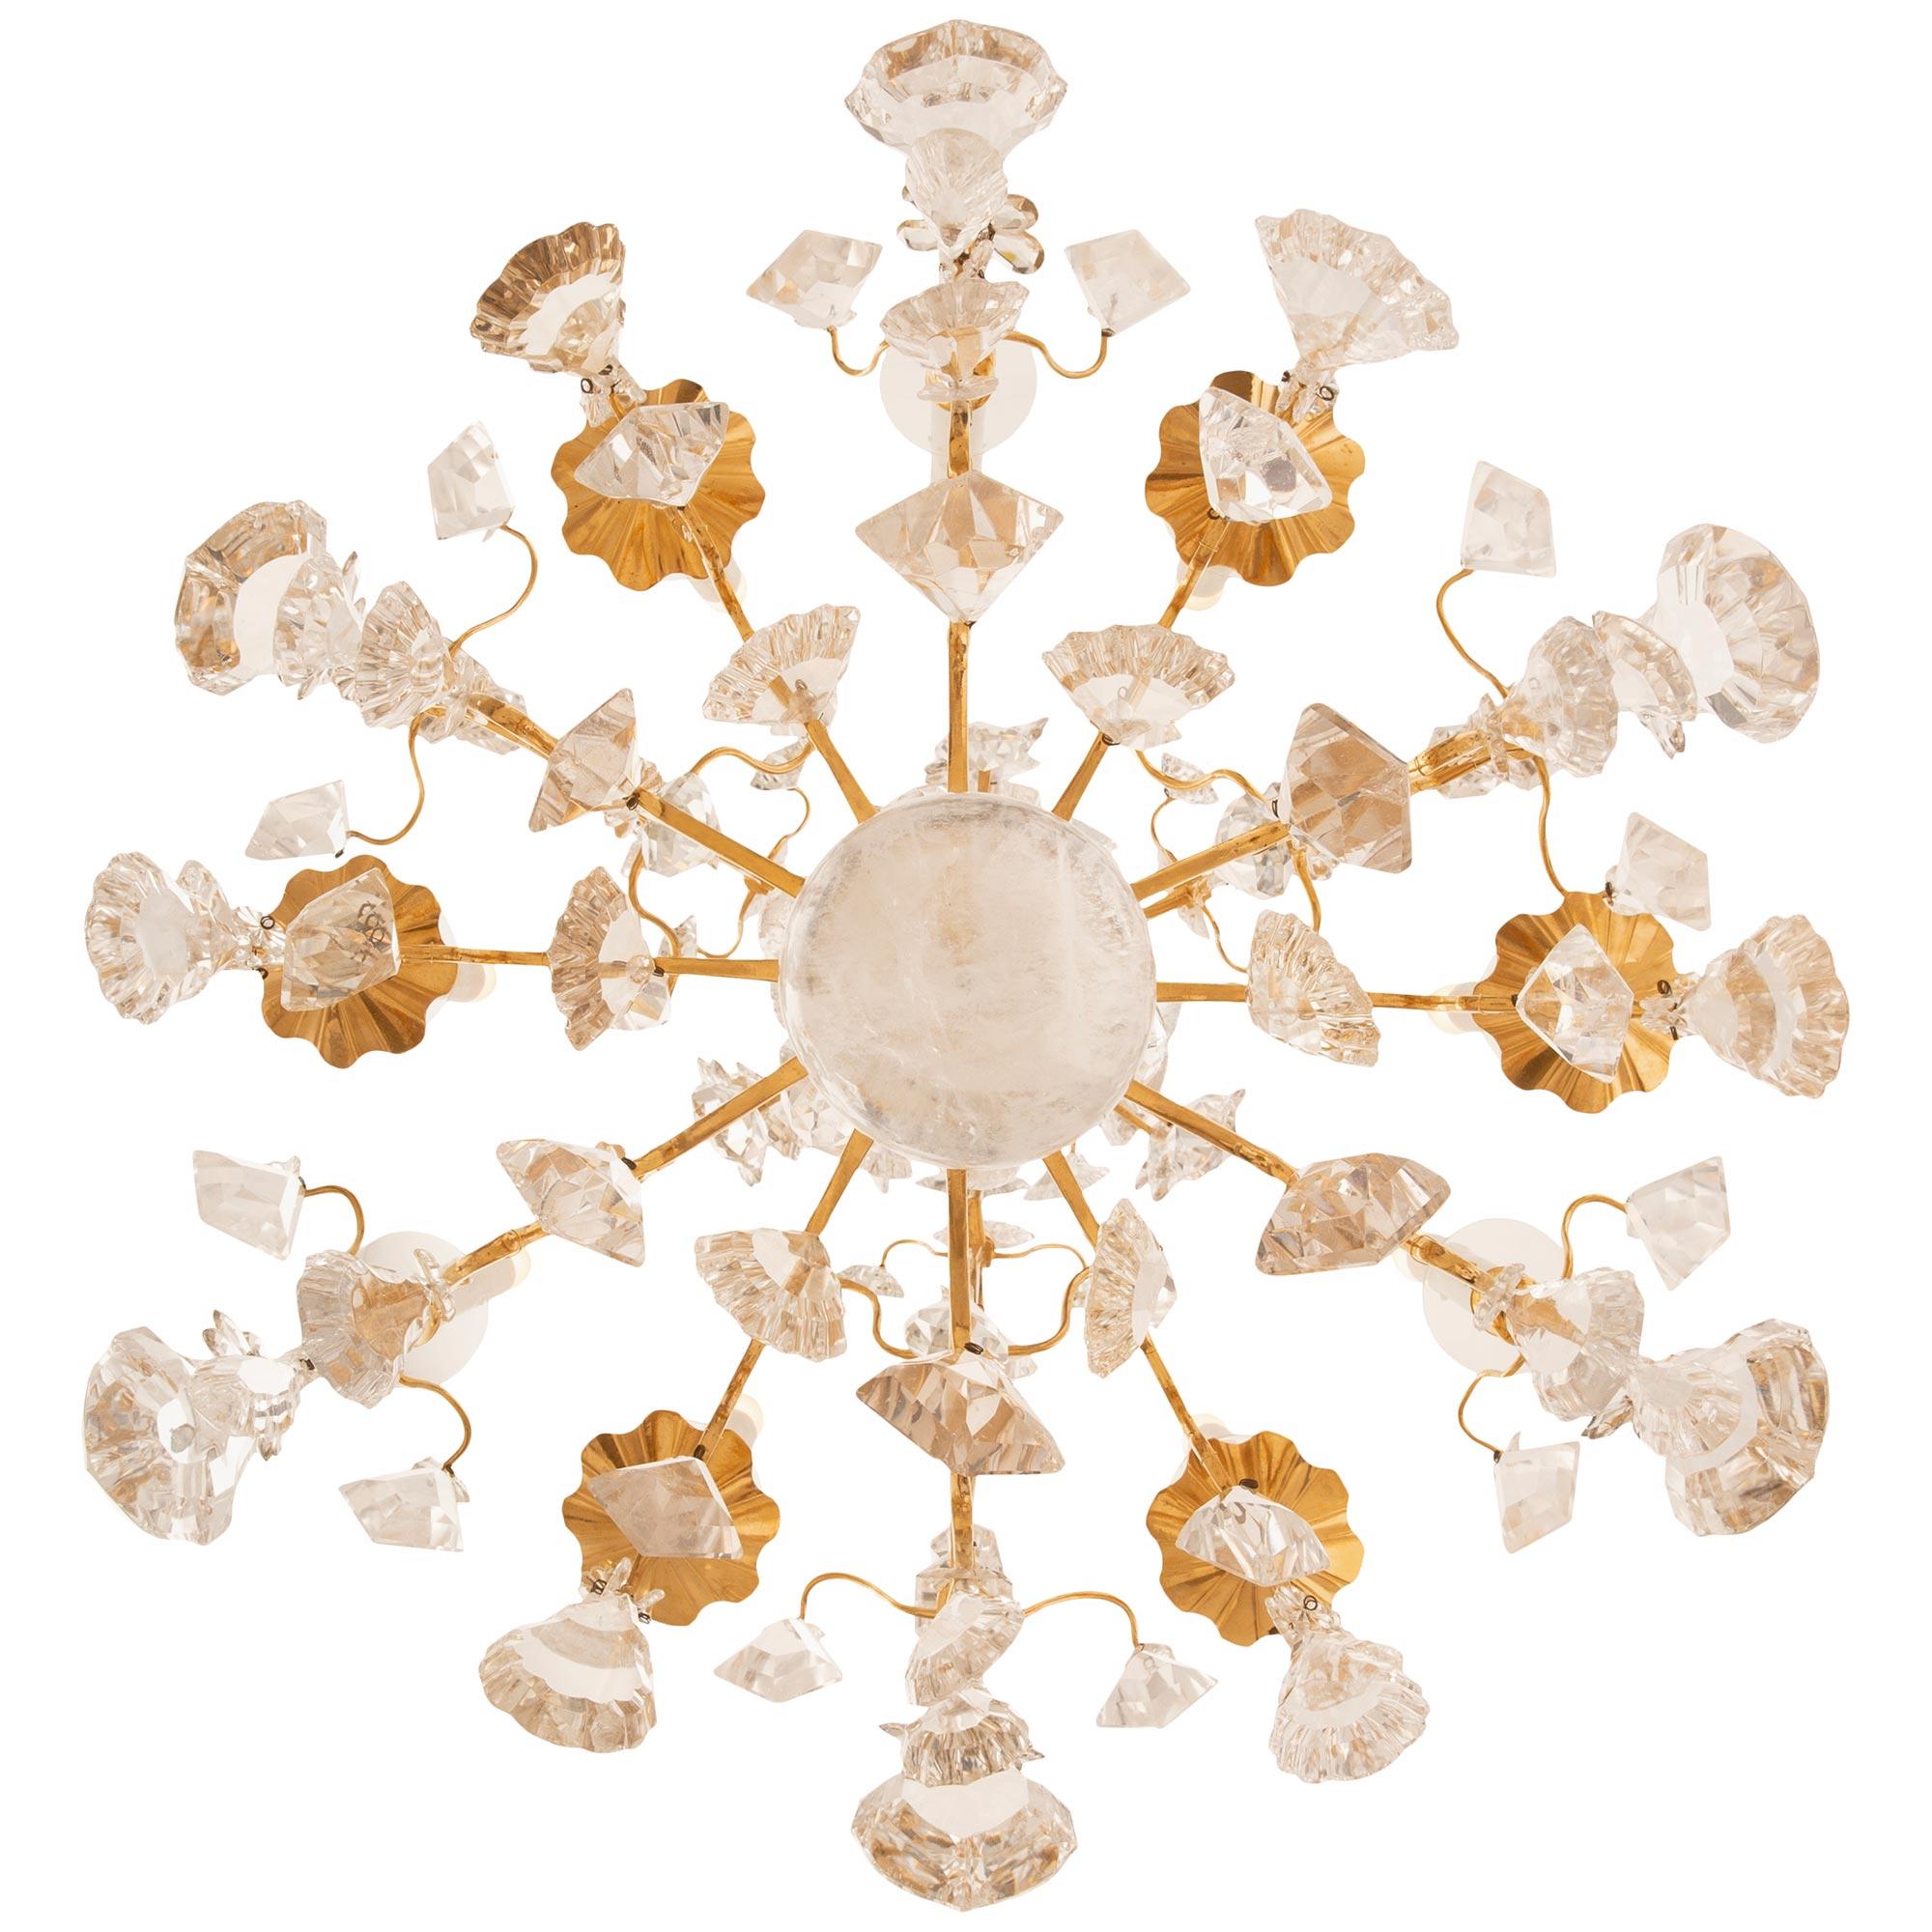 Hochwertiger französischer Kronleuchter aus dem 19. Jahrhundert im Stil Louis XV mit Ormolu, Bergkristall und Kristall. Der neunarmige, offene Ormolu-Käfig hat drei Haupttragarme mit geschliffenen Prismen und dekorativen Bergkristalldolchen, die